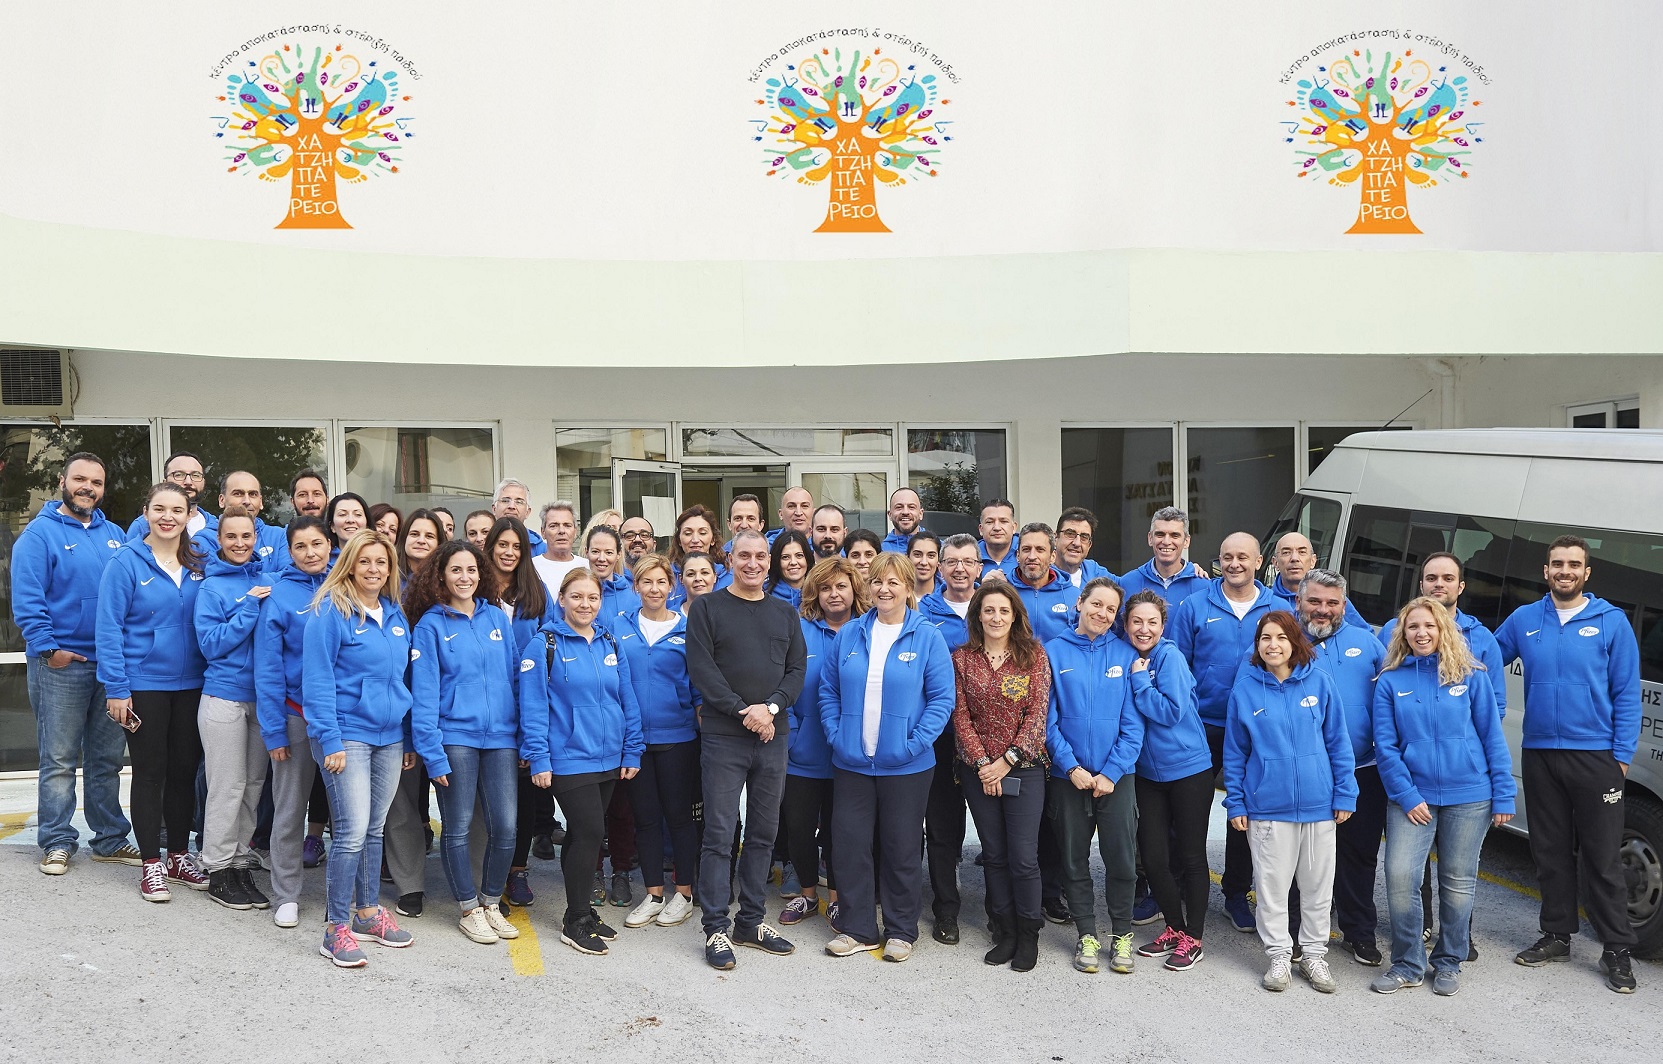 Οι εργαζόμενοι της Pfizer Hellas για άλλη μια χρονιά προσφέρουν εθελοντική εργασία σε Ιδρύματα για παιδιά